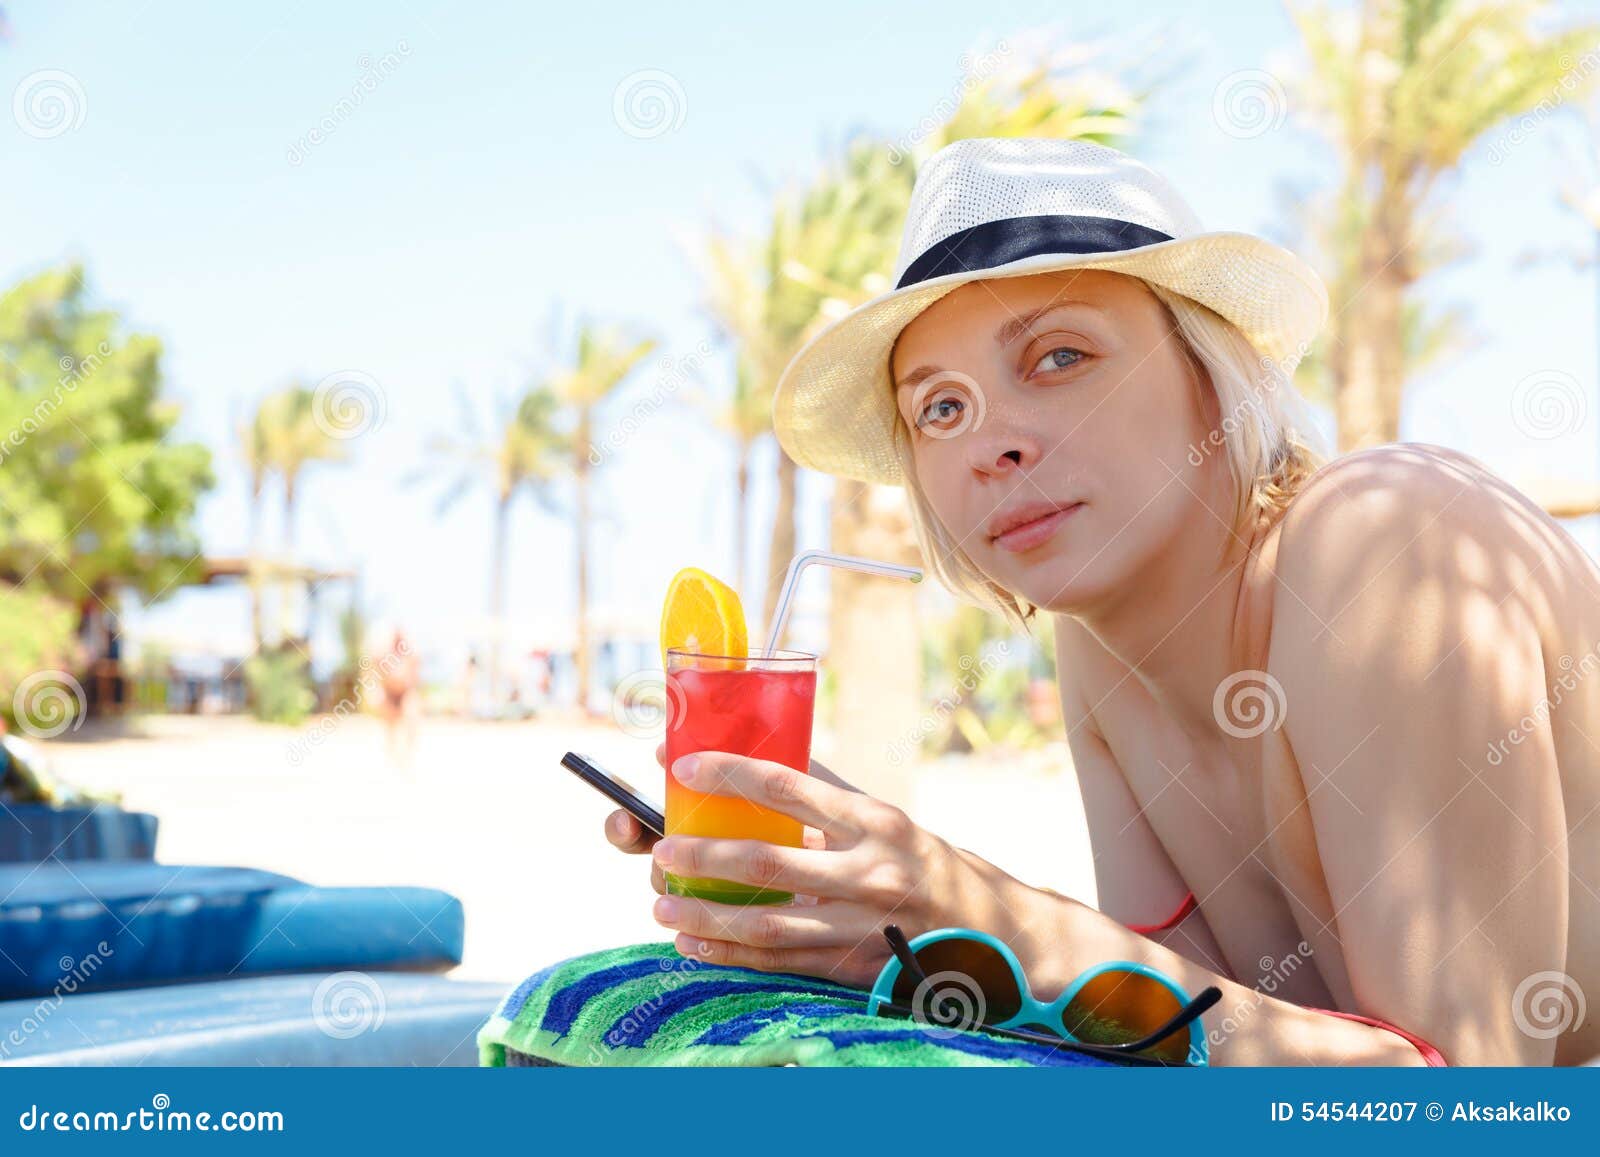 Woman in bikini stock image. Image of caucasian, outdoor - 54544207